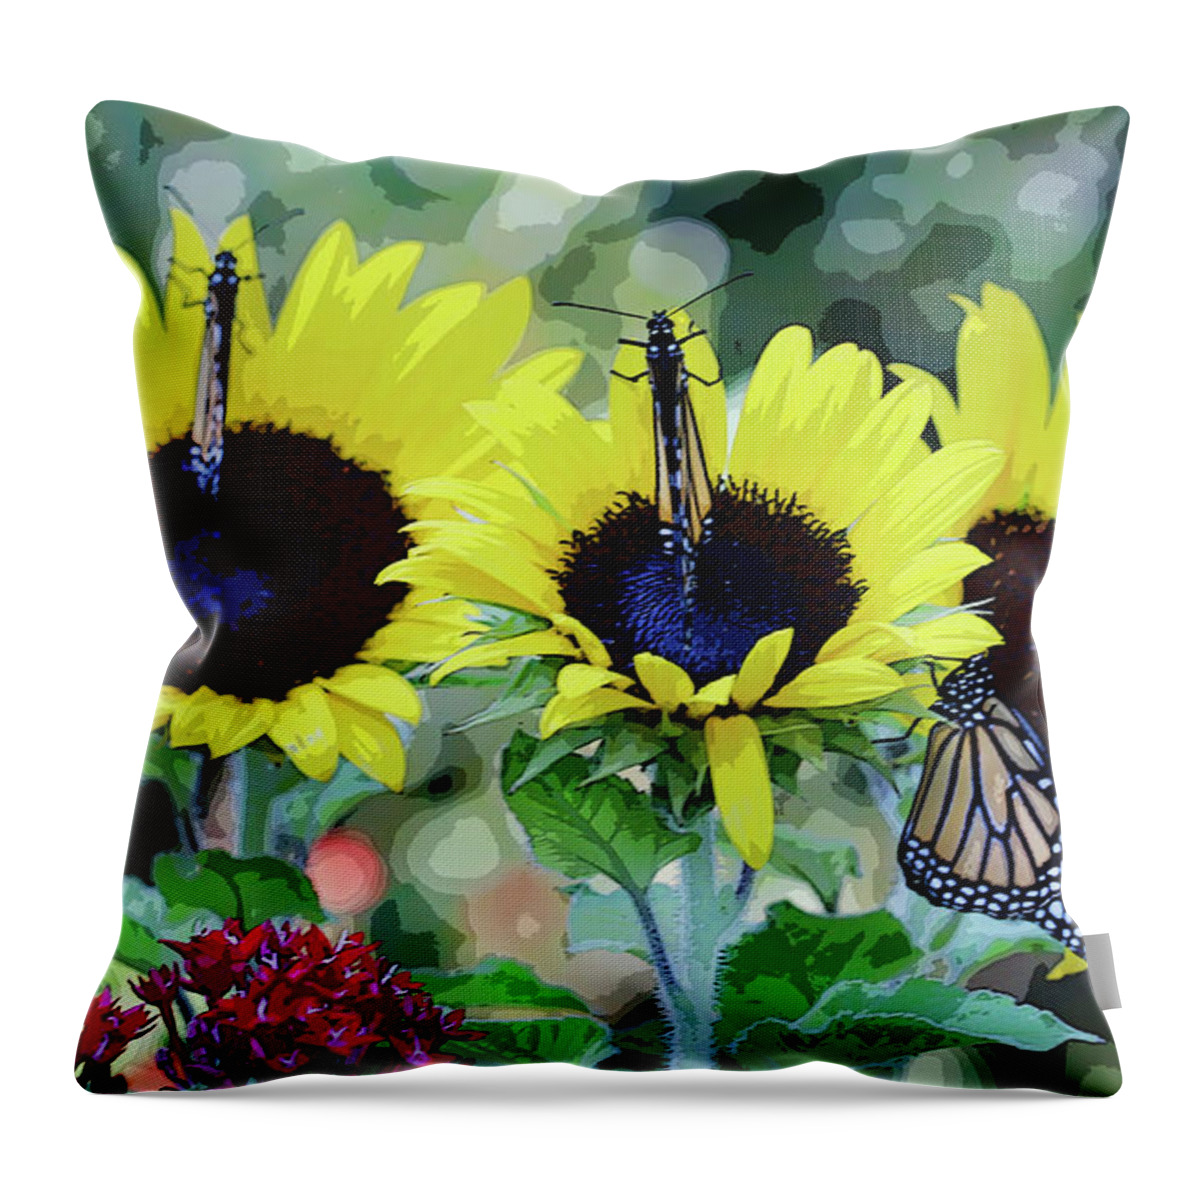 Sunflower And Butterflies Throw Pillow featuring the photograph Sunflowers and Butterflies by Luana K Perez